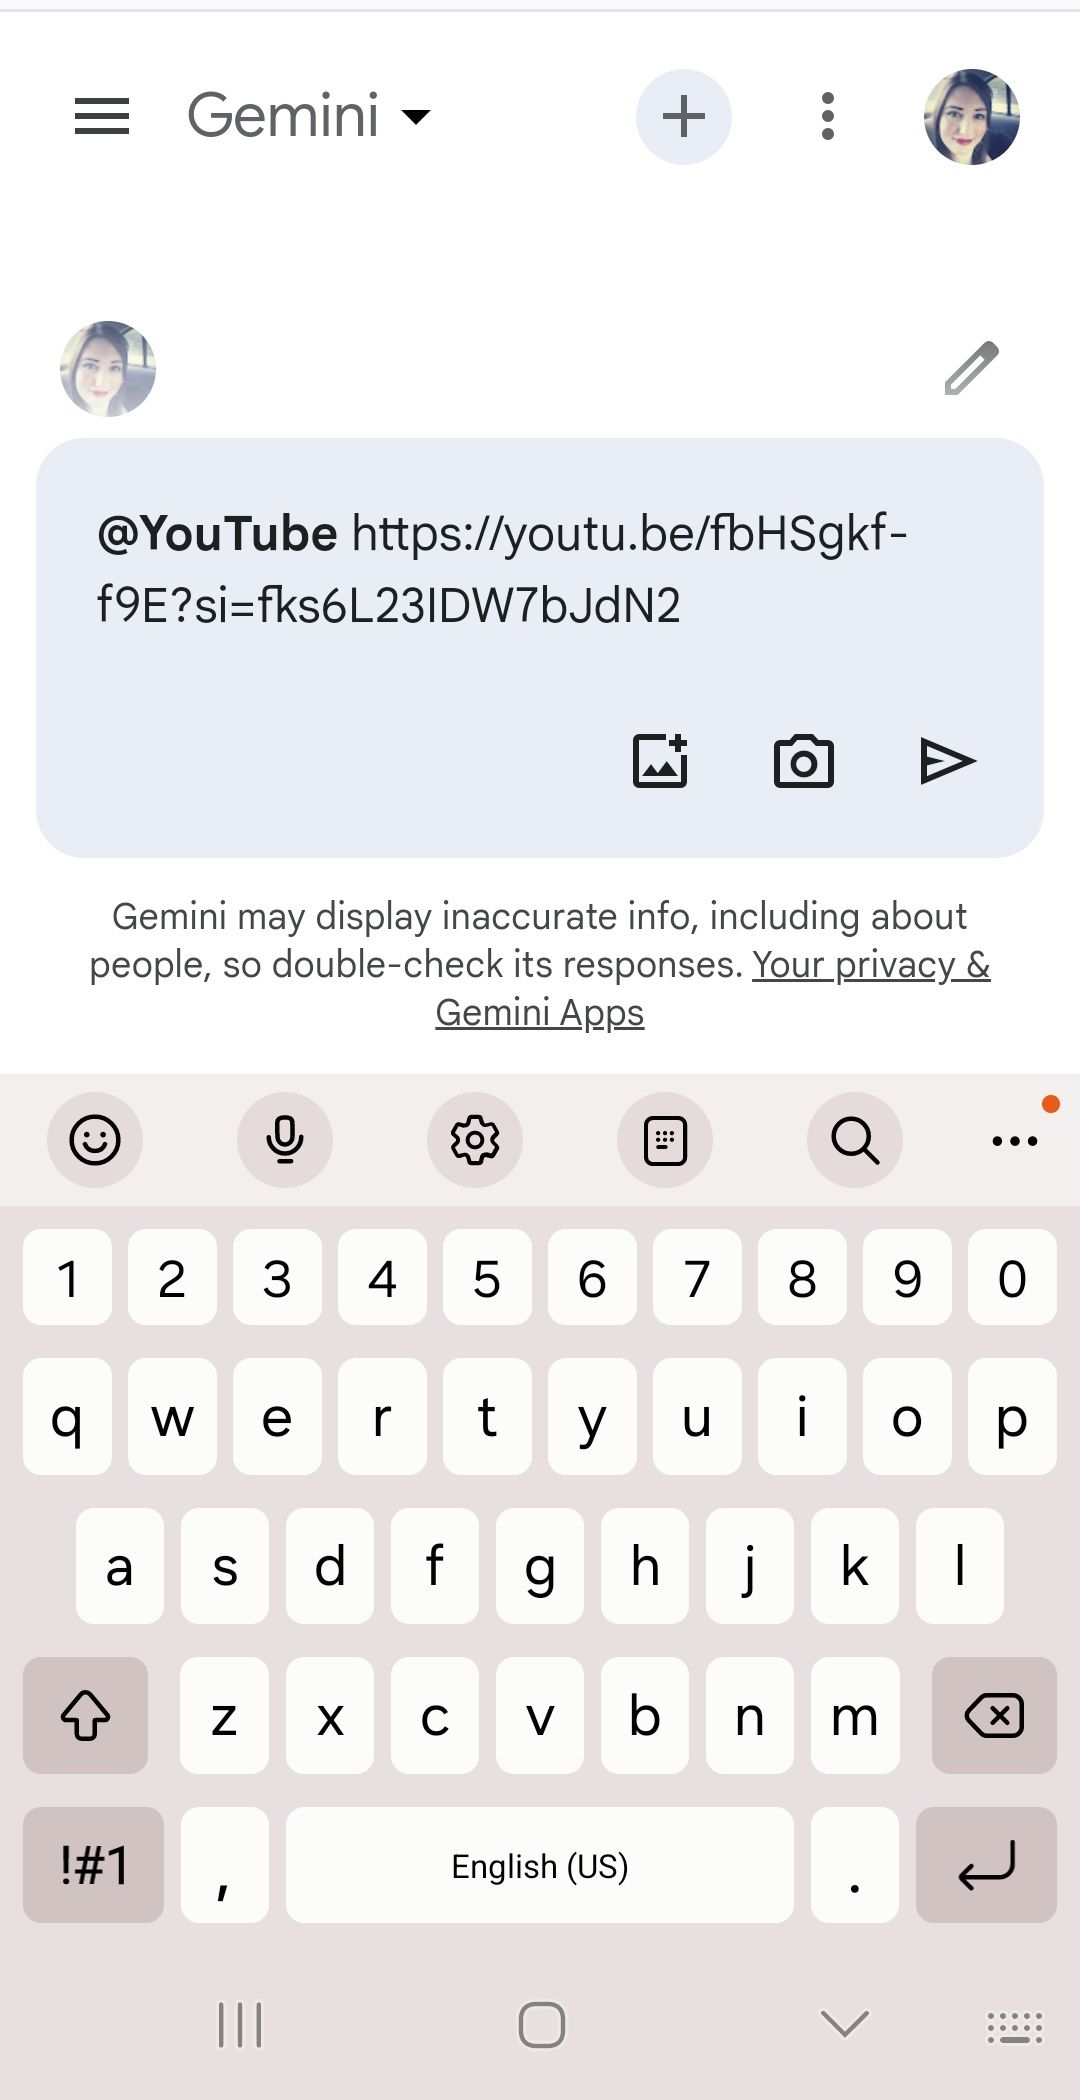 vídeo do youtube com link incorporado na caixa de prompt do Google Gemini